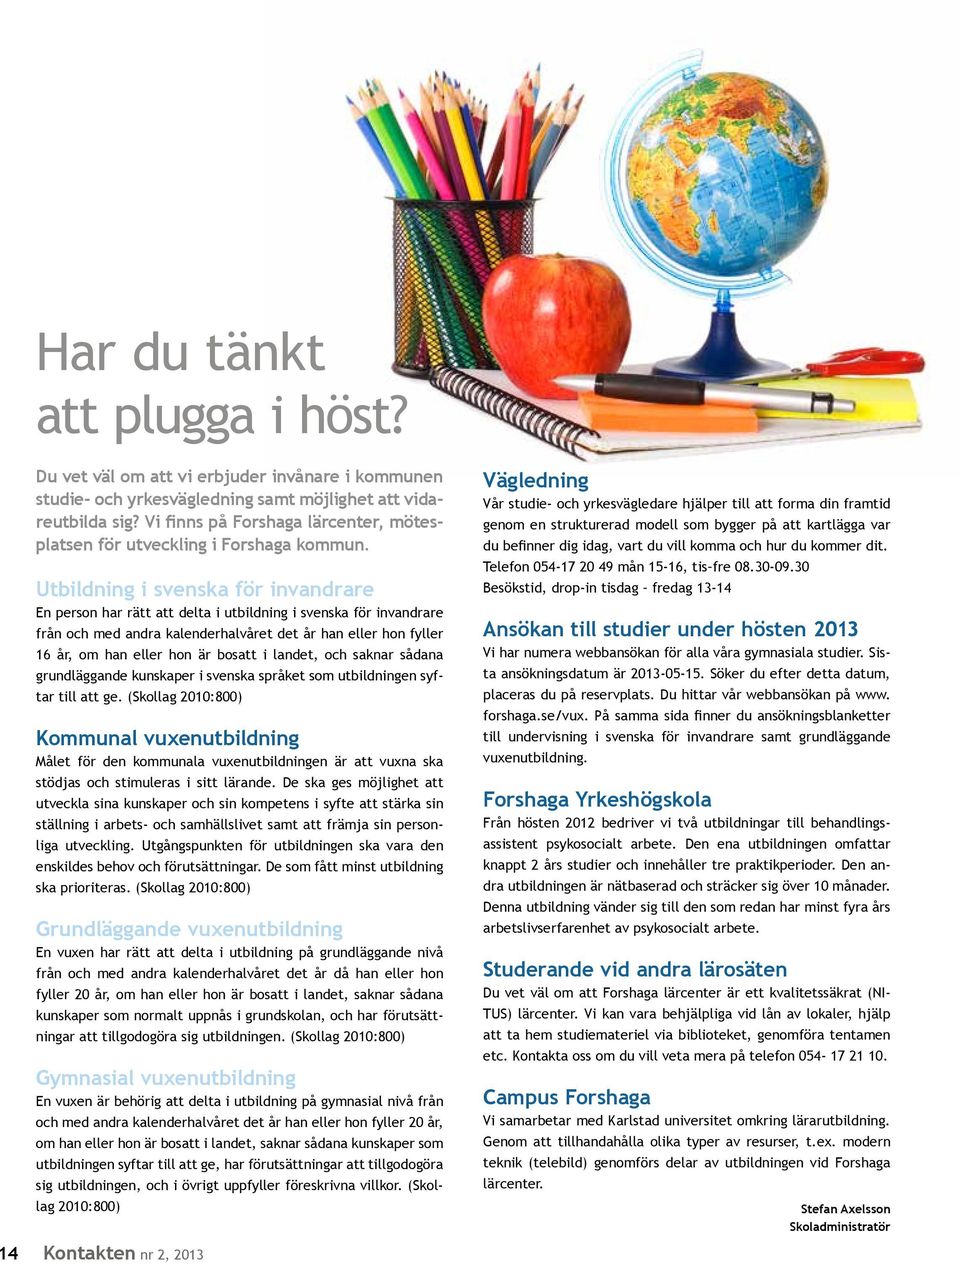 Utbildning i svenska för invandrare En person har rätt att delta i utbildning i svenska för invandrare från och med andra kalenderhalvåret det år han eller hon fyller 16 år, om han eller hon är